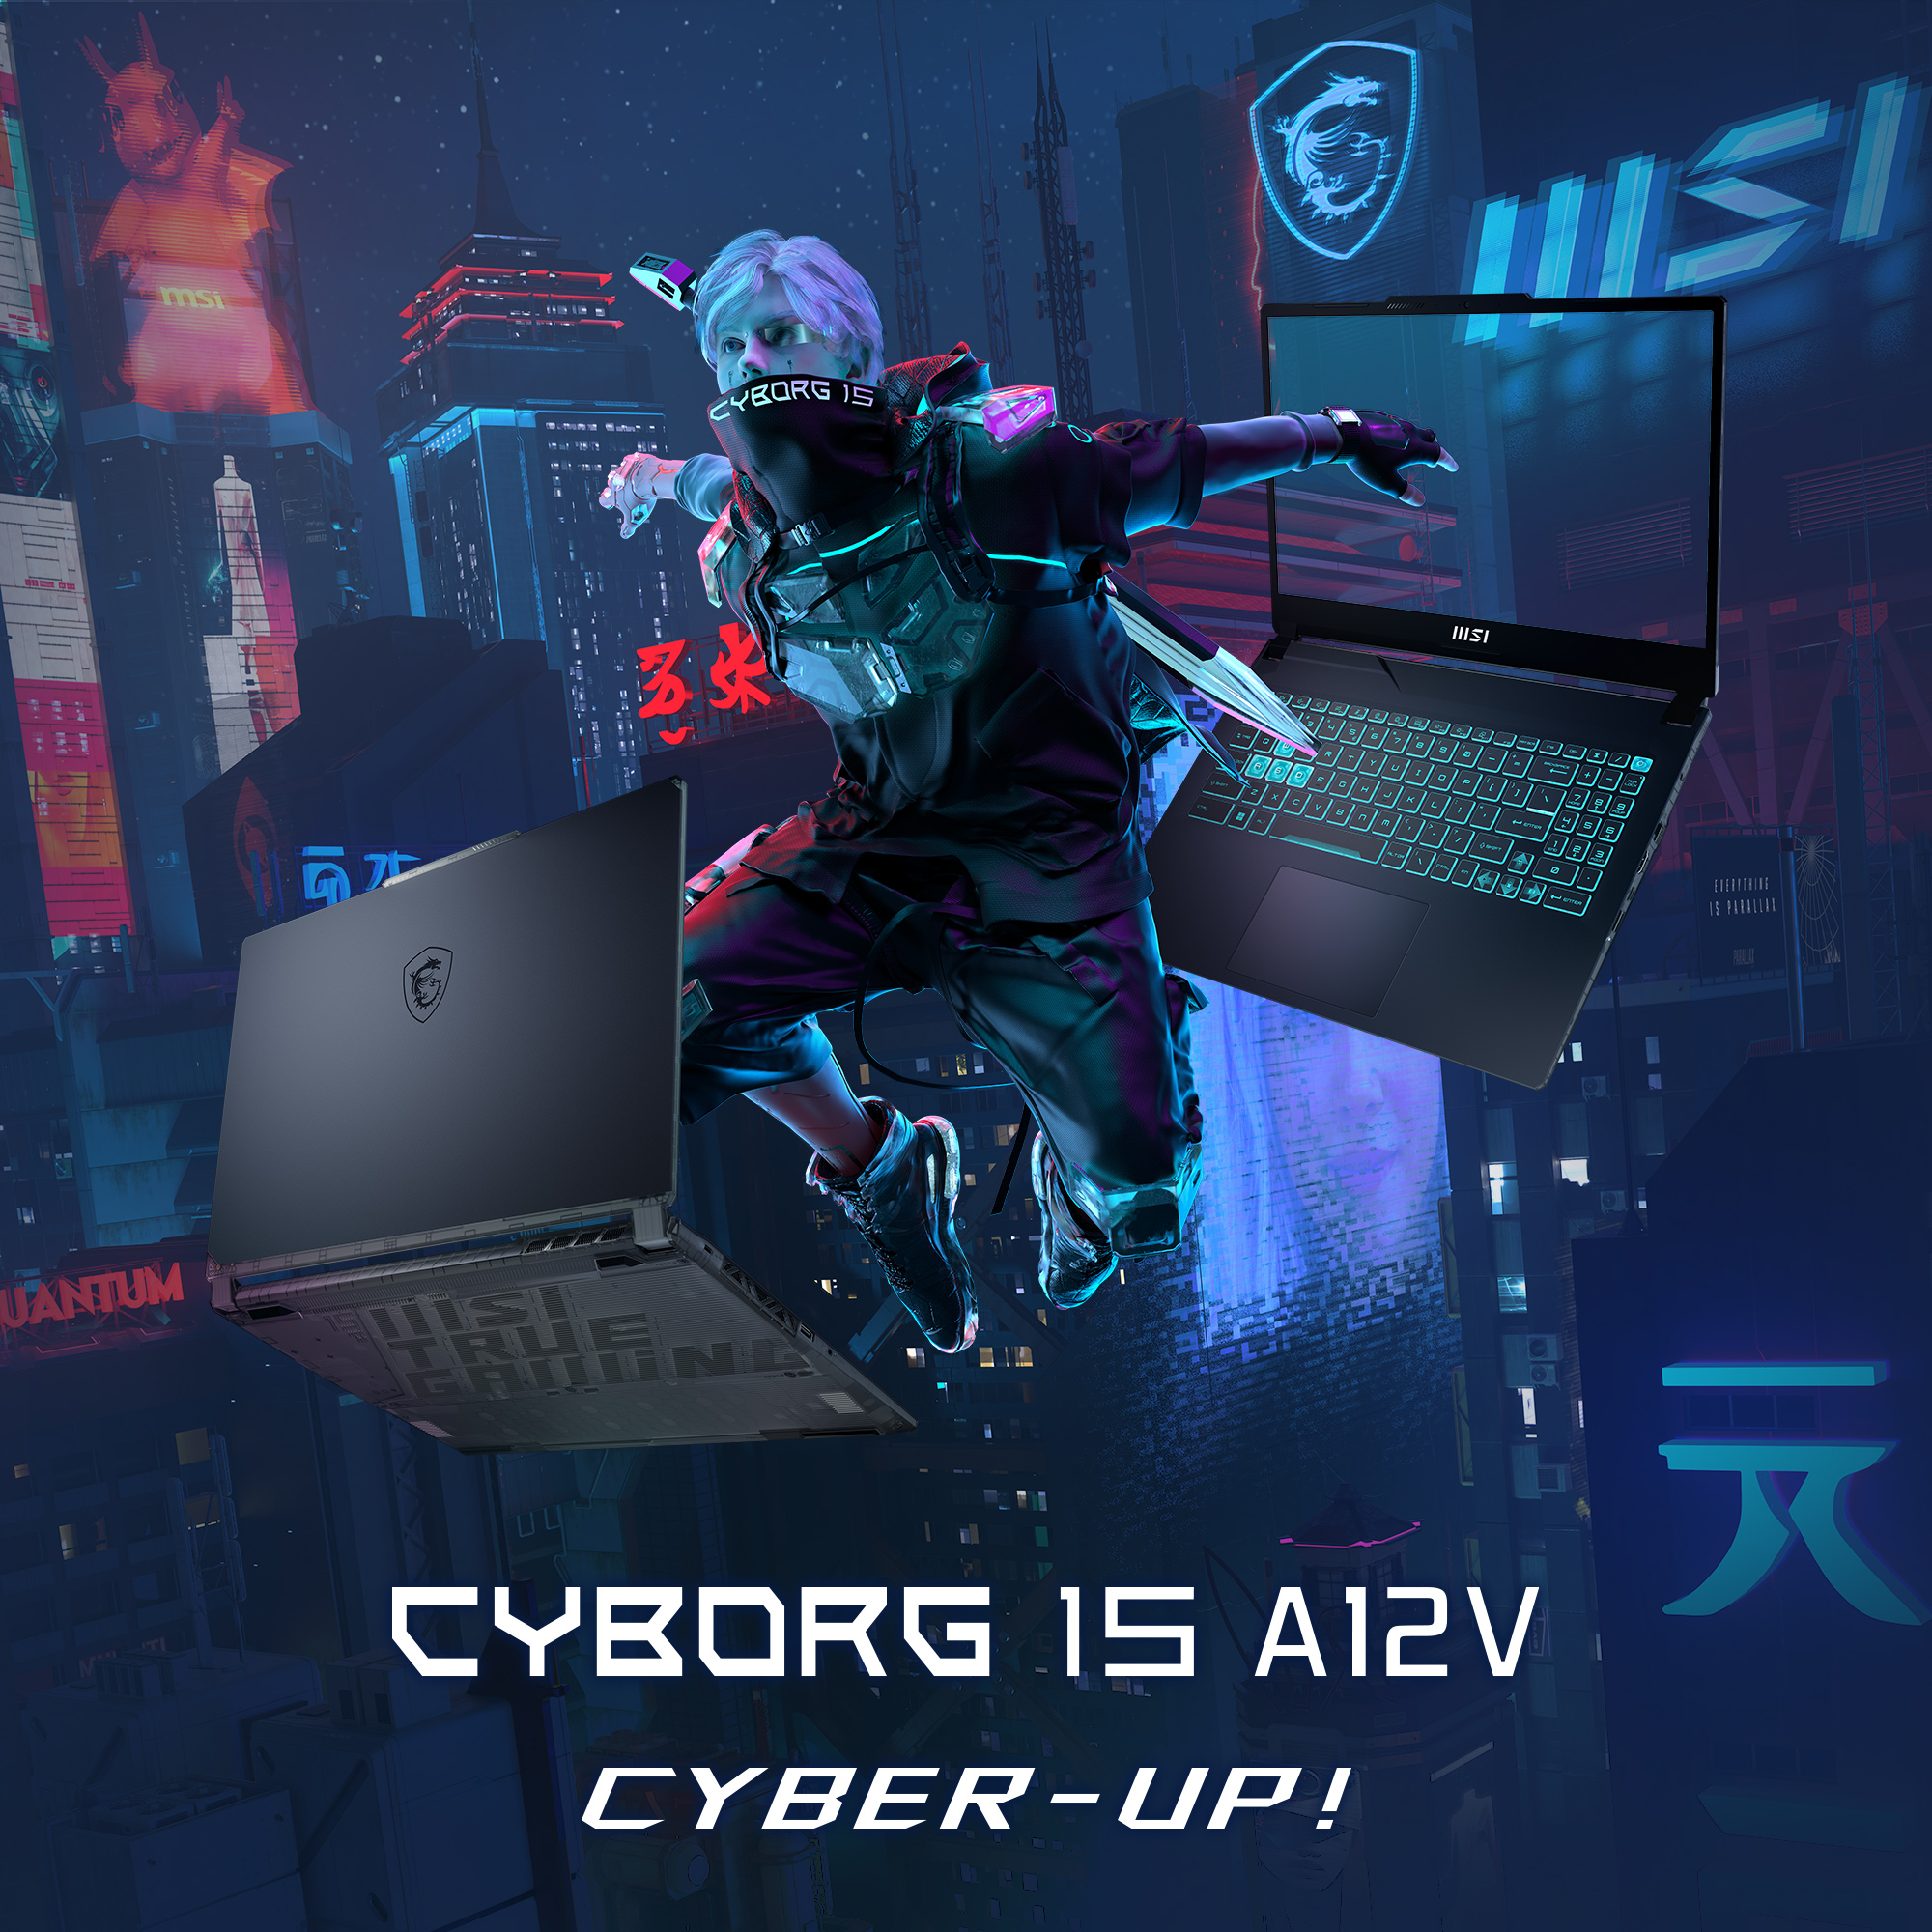 MSI Cyborg 15 A12VF-1030 - CYBER-UP!